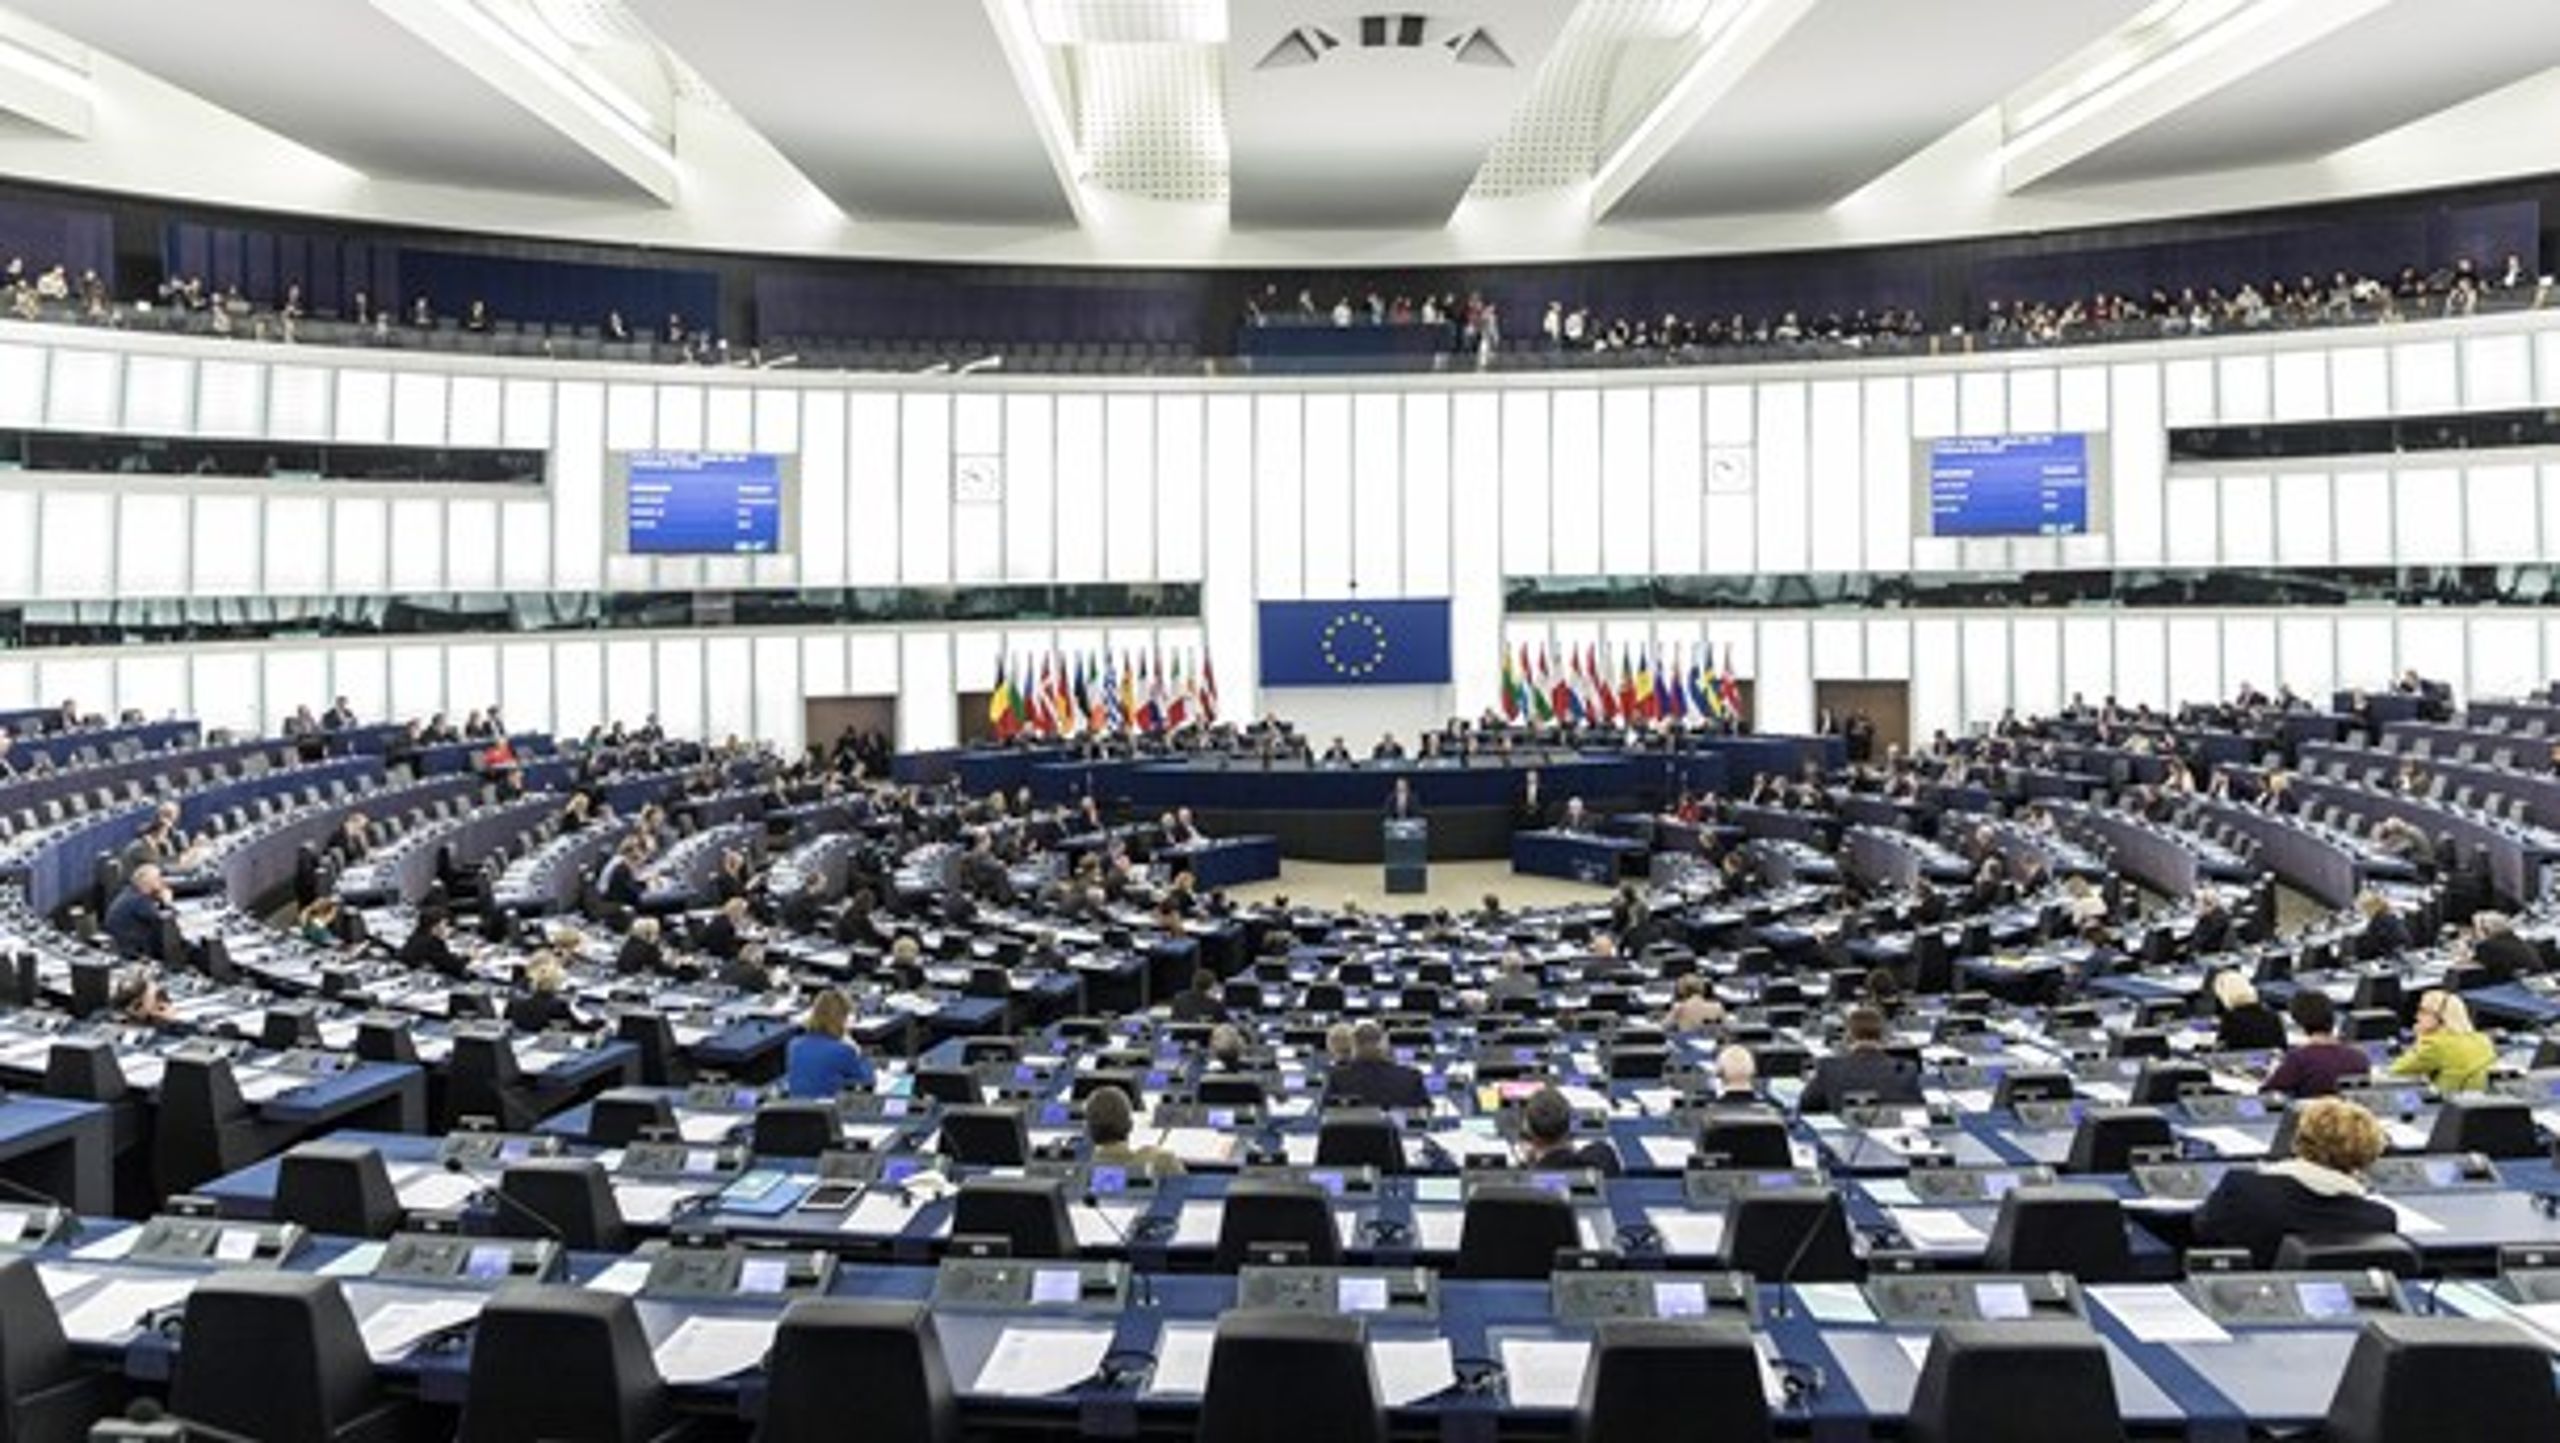 Der bliver færre til at fylde pladserne i Europa-Parlamentets plenarsal, når briterne forlader EU-samarbejdet i marts næste år. Danske parlamentarikere får dog én stol mere at fylde efter næste valg.